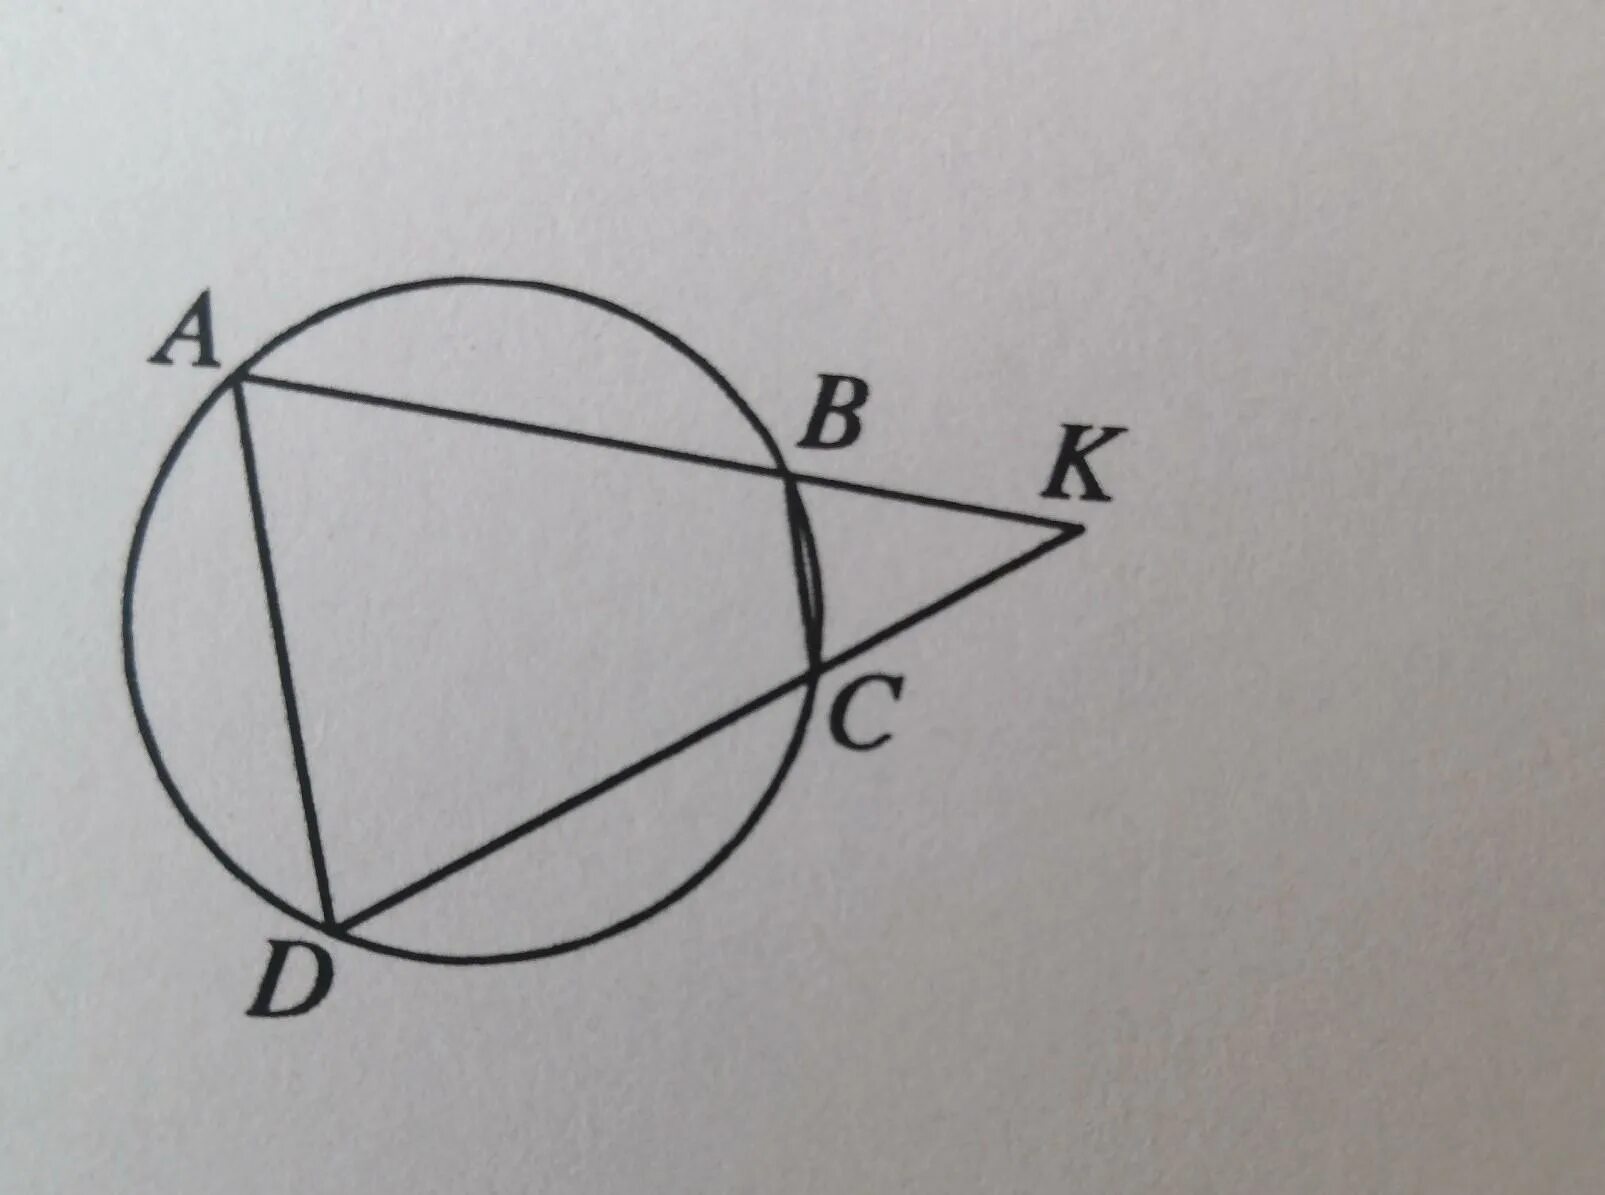 Четырёхугольник ABCD вписан в окружность. Четырехугольник ABCD вписан в окружность ab и CD пересекаются в точке k. Четырехугольник ABCD вписан в окружность. Прямые ab и CD пересекаются. Четырехугольник вписан в окружность прямые пересекаются в точке к.